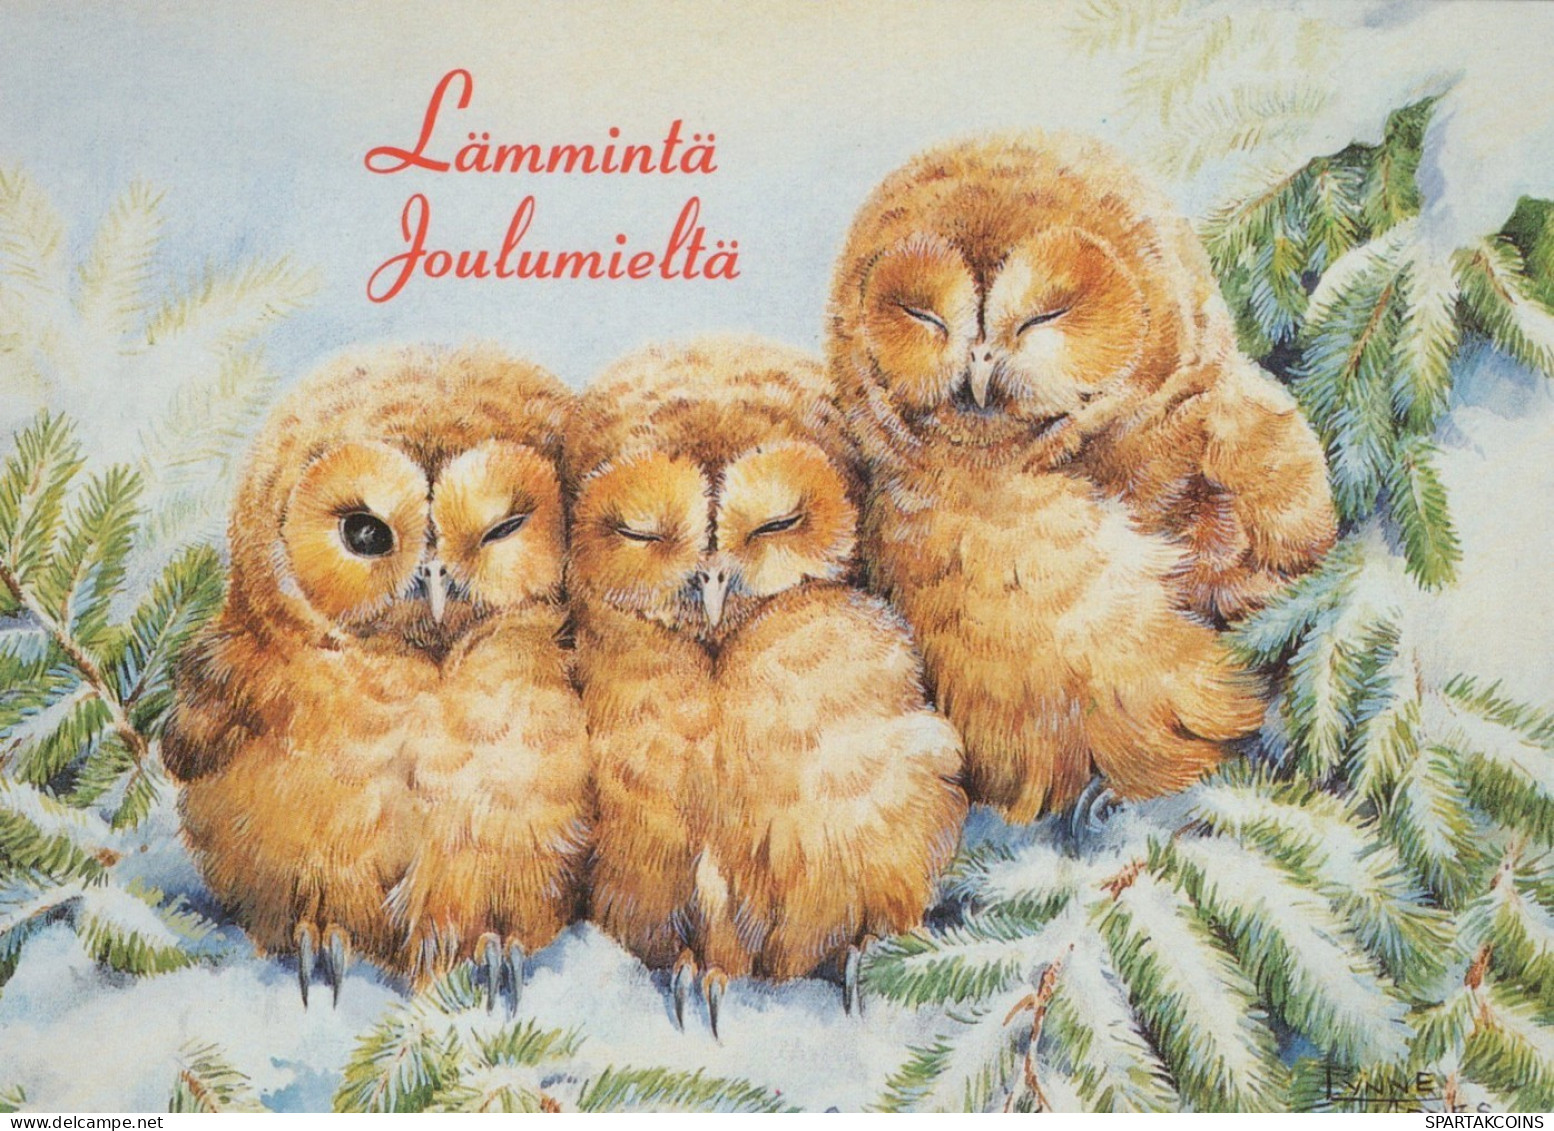 VOGEL Tier Vintage Ansichtskarte Postkarte CPSM #PAM738.DE - Oiseaux